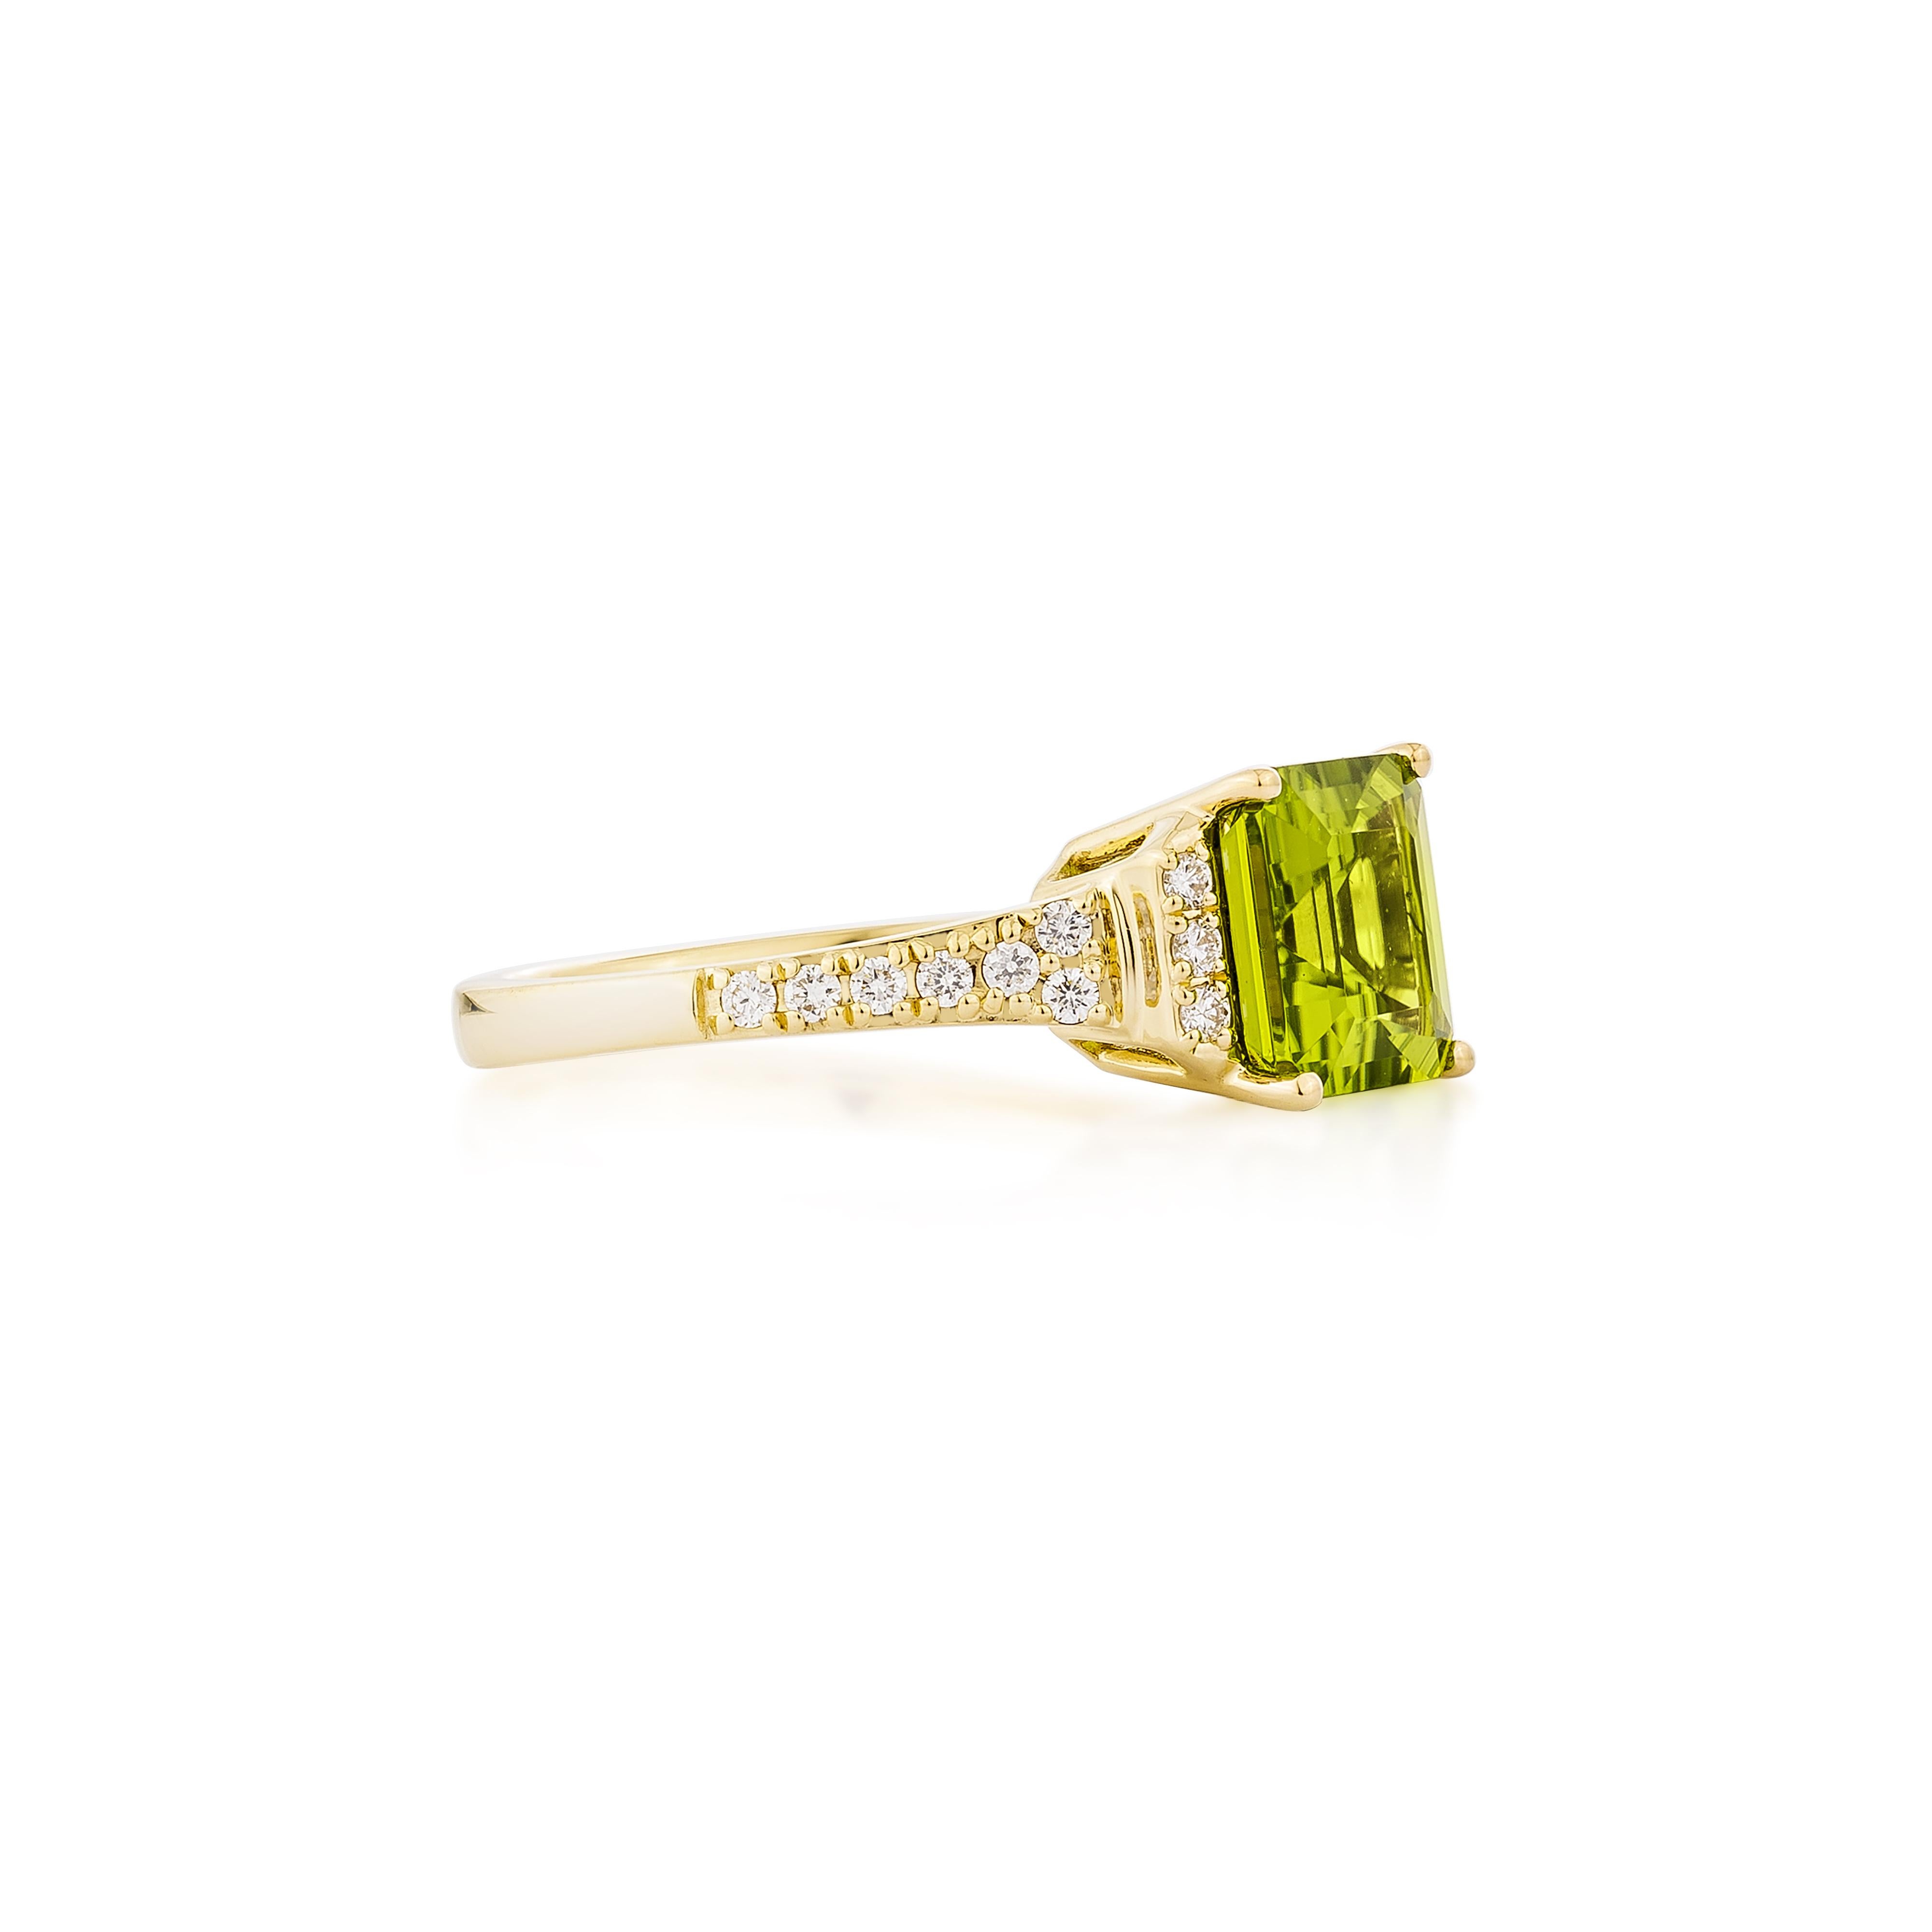 Präsentiert Eine schöne Auswahl an Juwelen, darunter  Der Peridot, Rhodolith, ist ideal für Menschen, die Qualität schätzen und ihn zu jeder Gelegenheit oder Party tragen möchten. Einer von ihnen ist ein Peridot-Ring aus Gelbgold mit einem